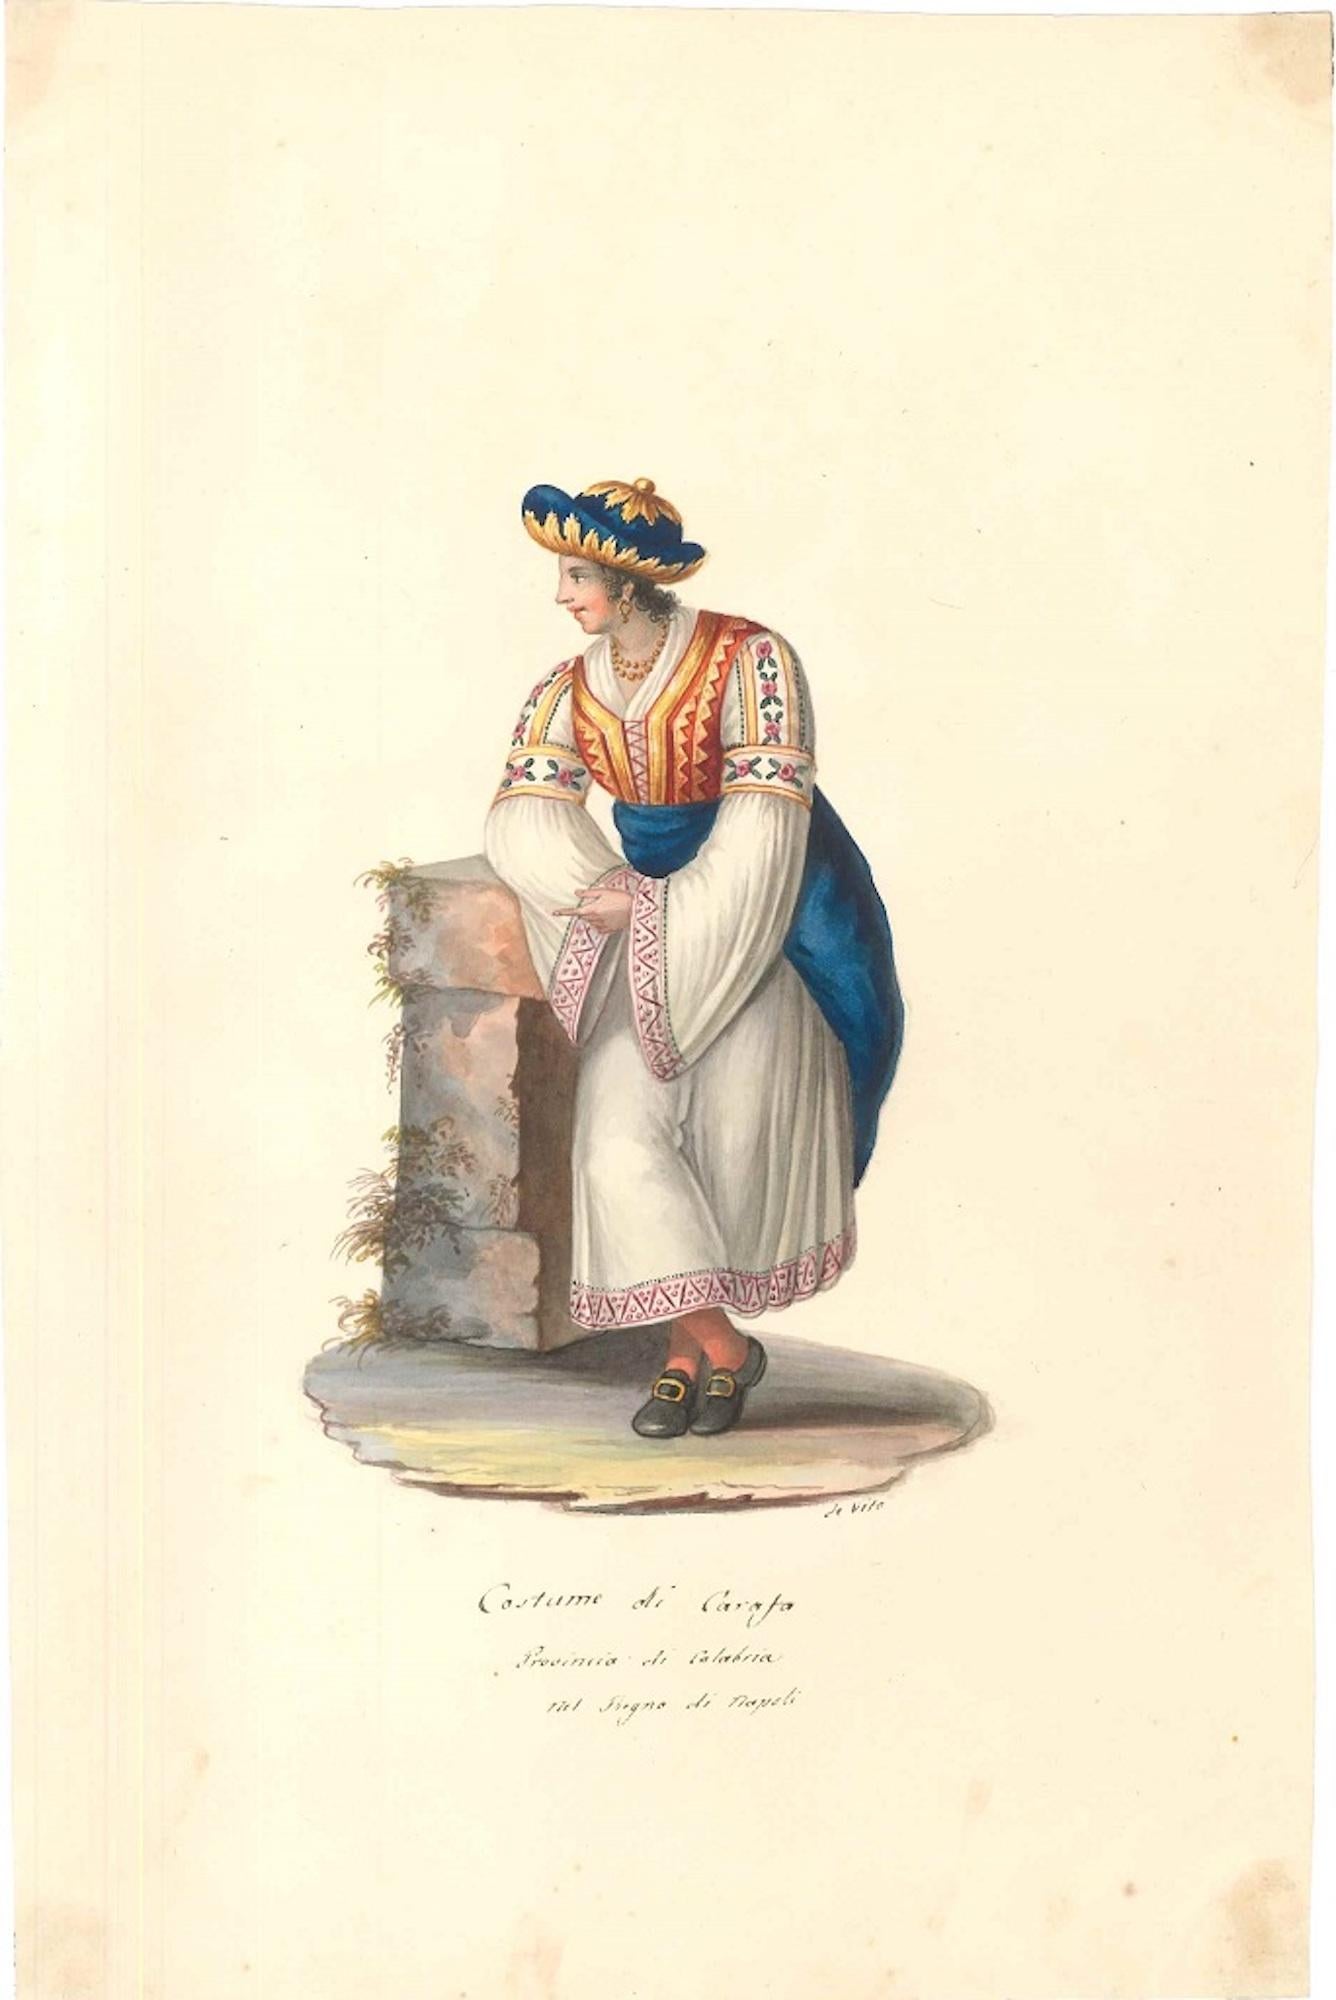 Costume di Carafa - Watercolor by M. De Vito - 1820 ca.